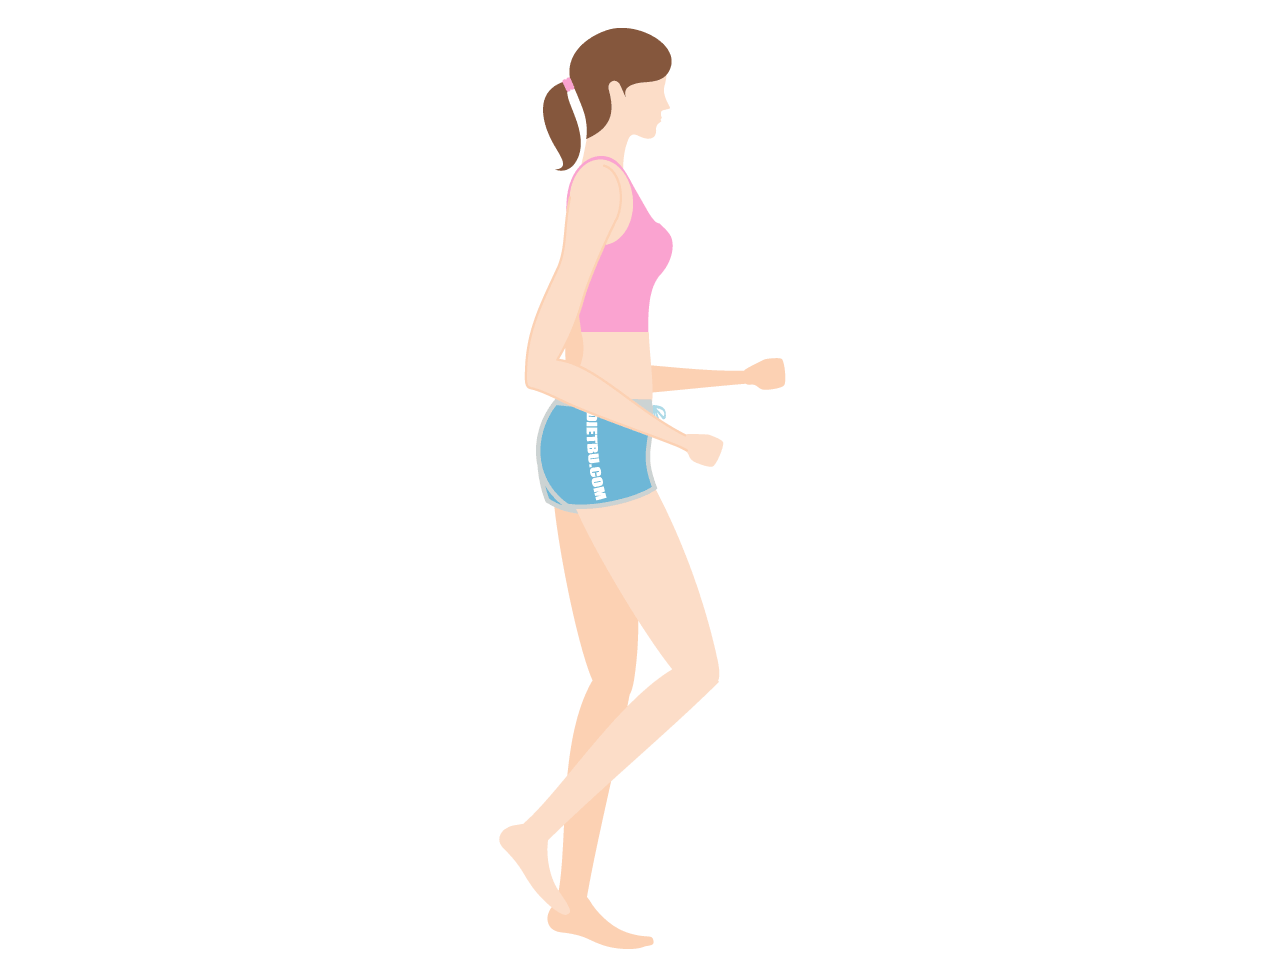 脂肪燃焼と脚やせの有酸素運動「その場ジョギング」のやり方